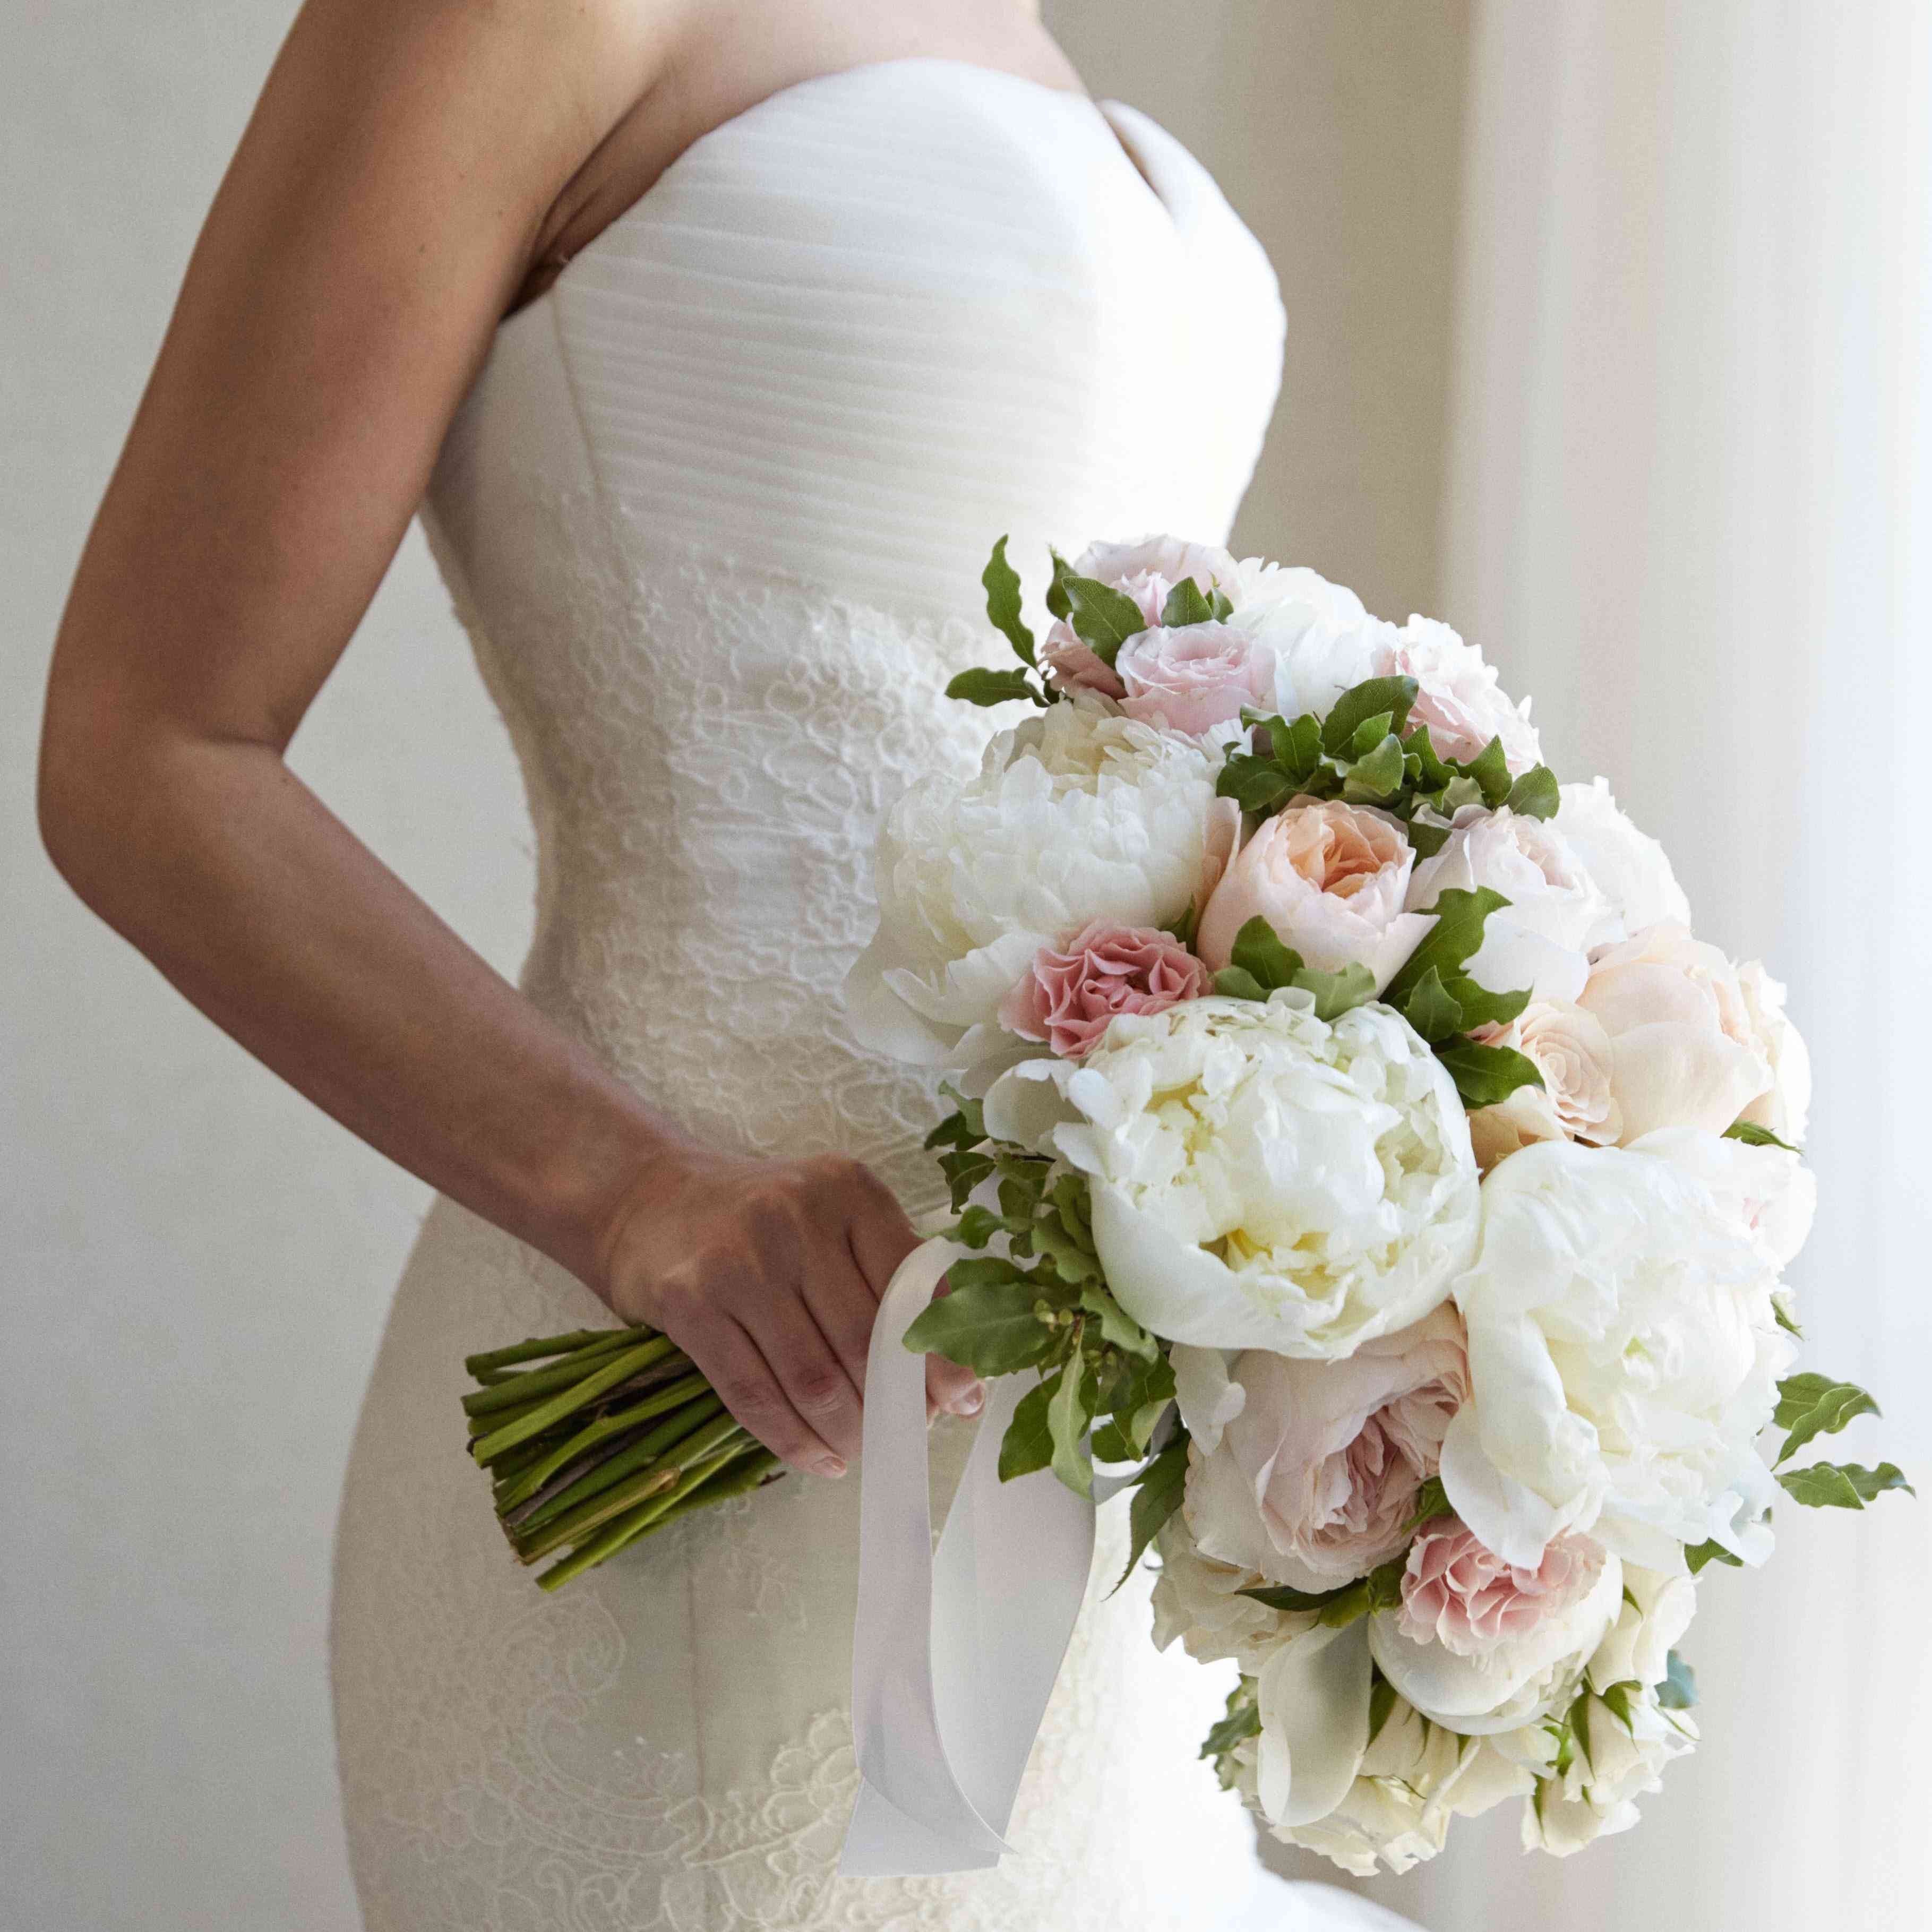 Свадьба в бирюзовом цвете: оформление, фото, видео